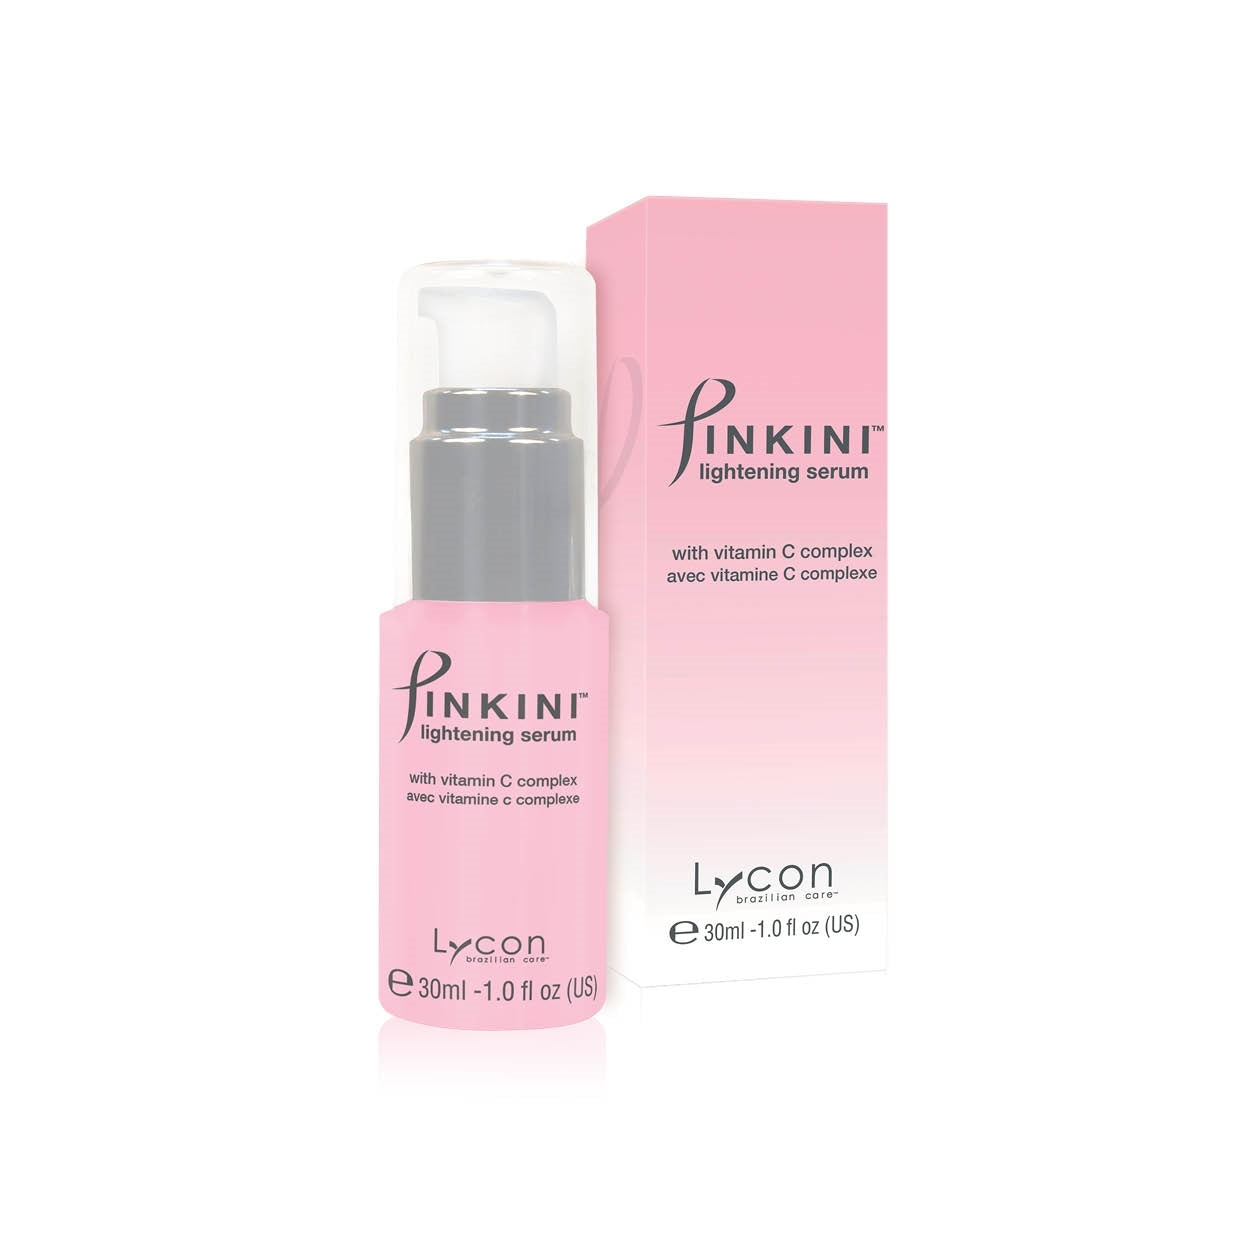 Pinkini Lightening Serum